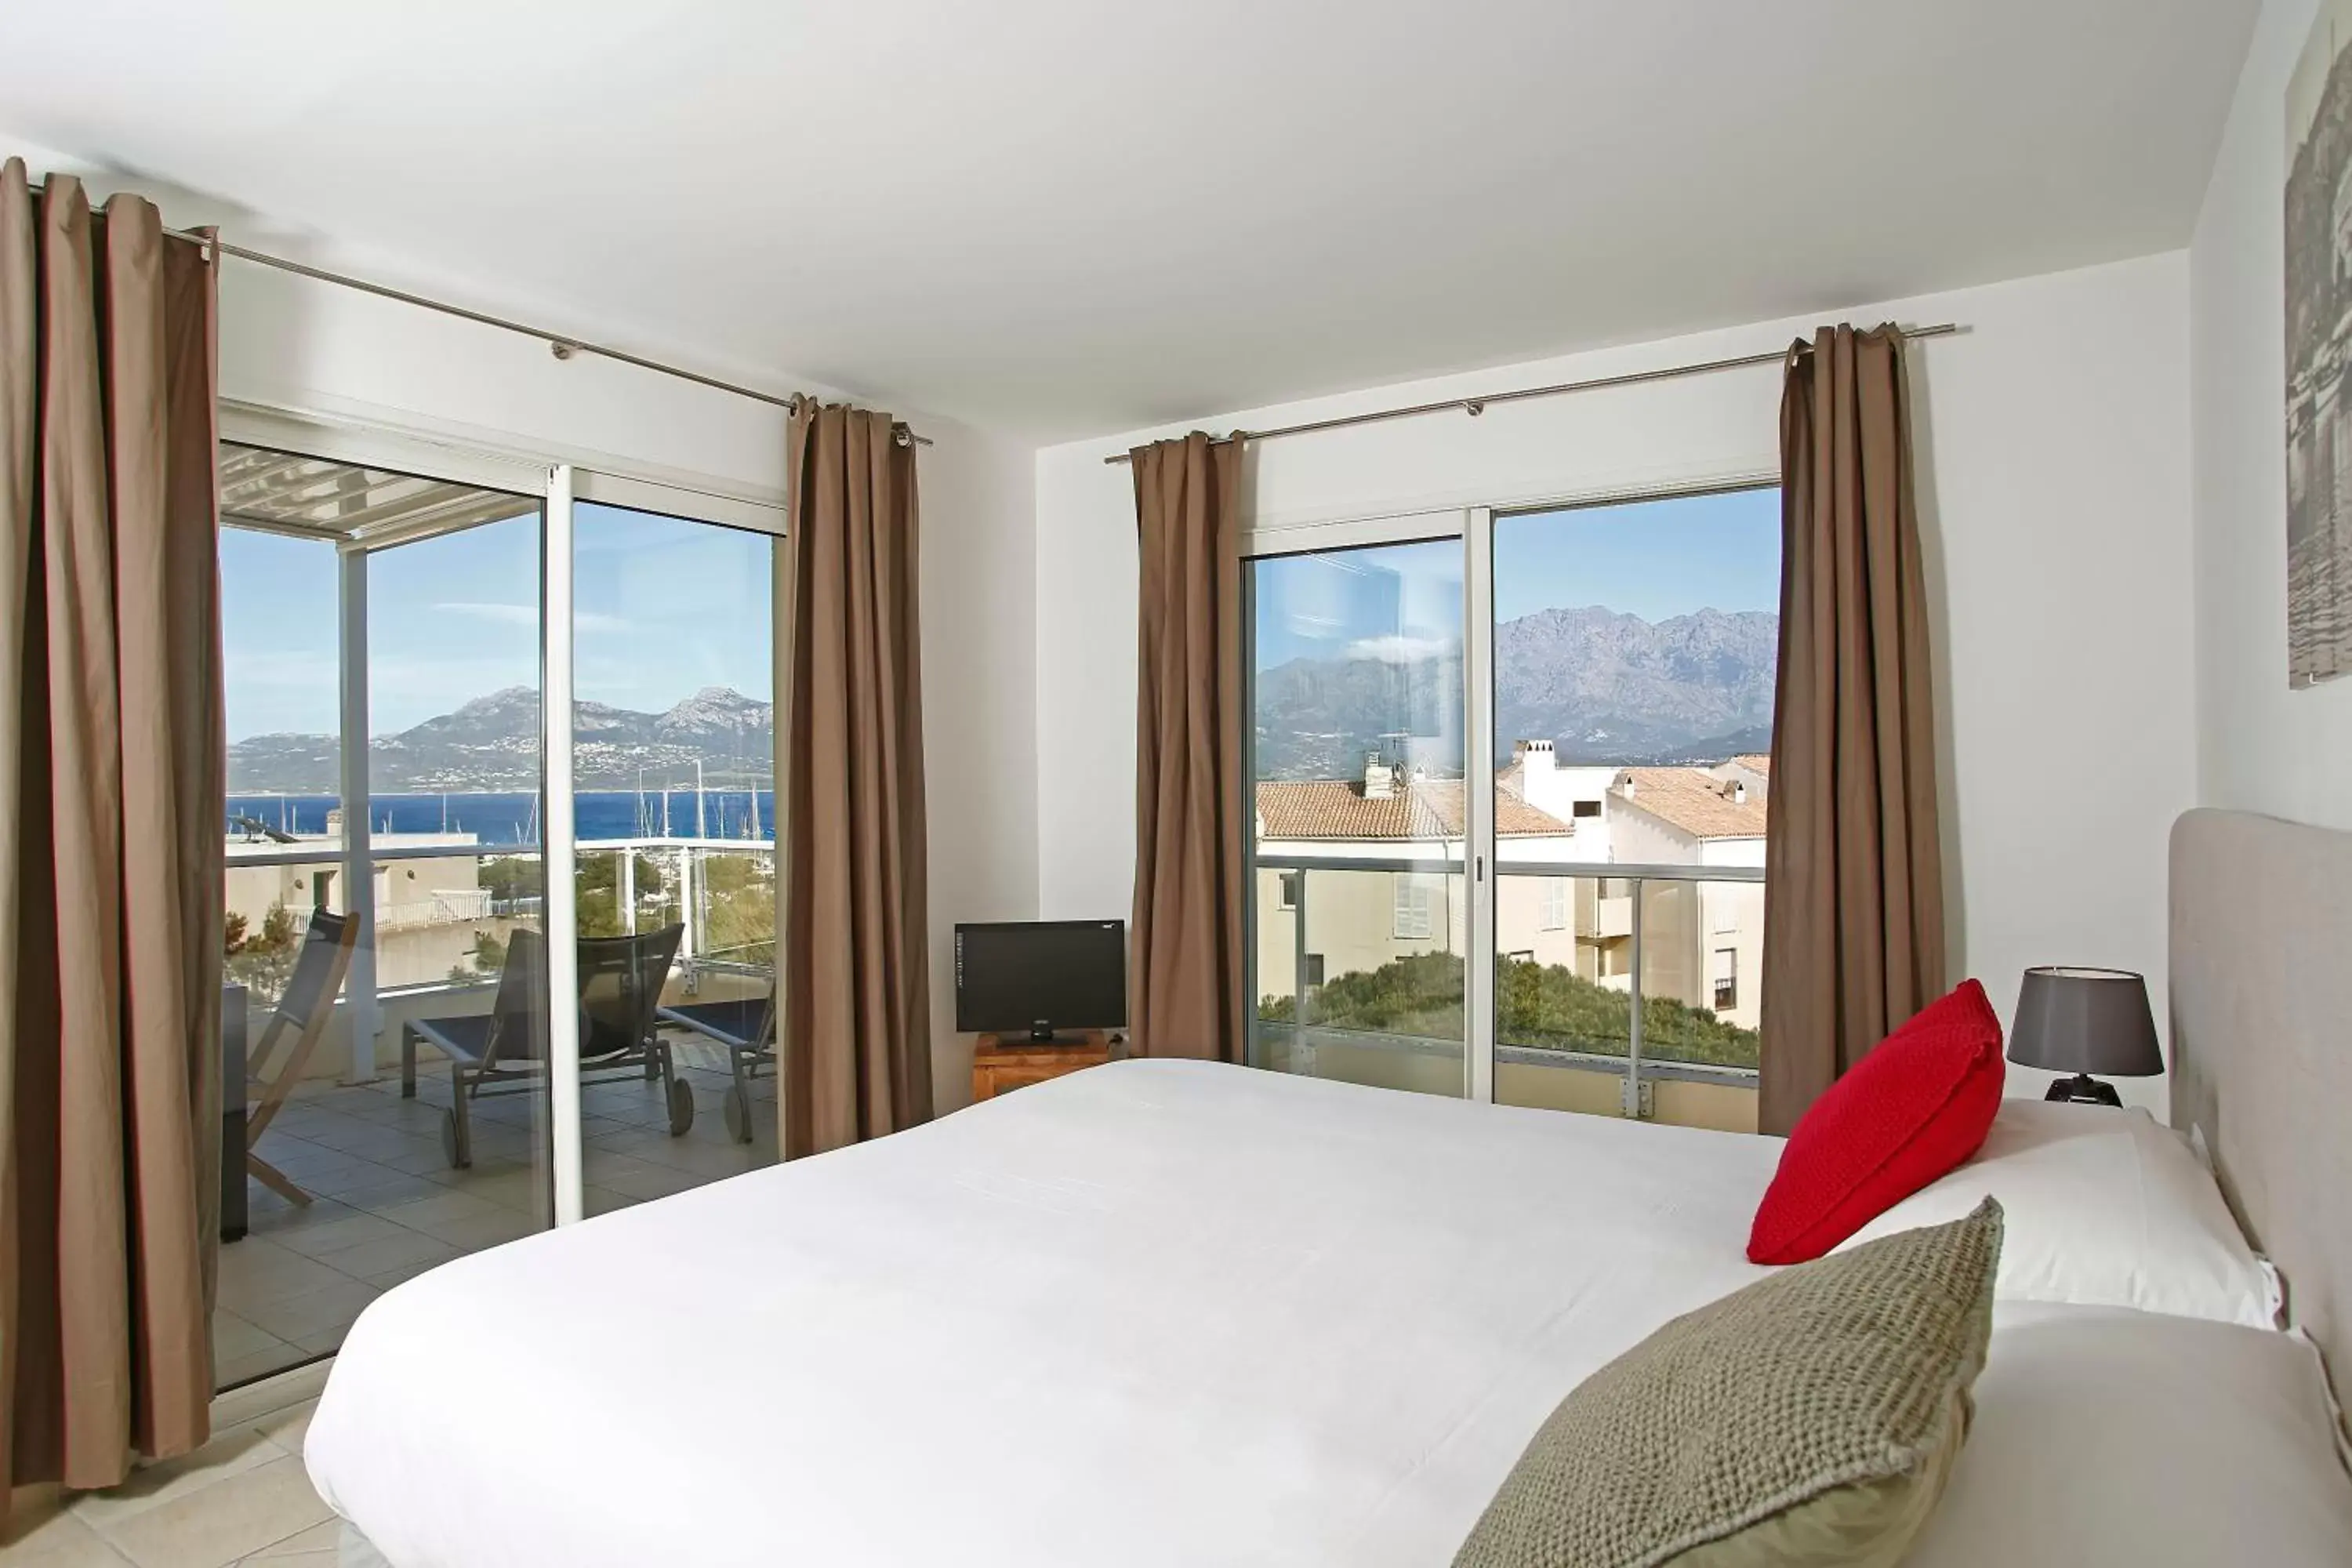 Balcony/Terrace, Mountain View in Best Western Hotel Casa Bianca